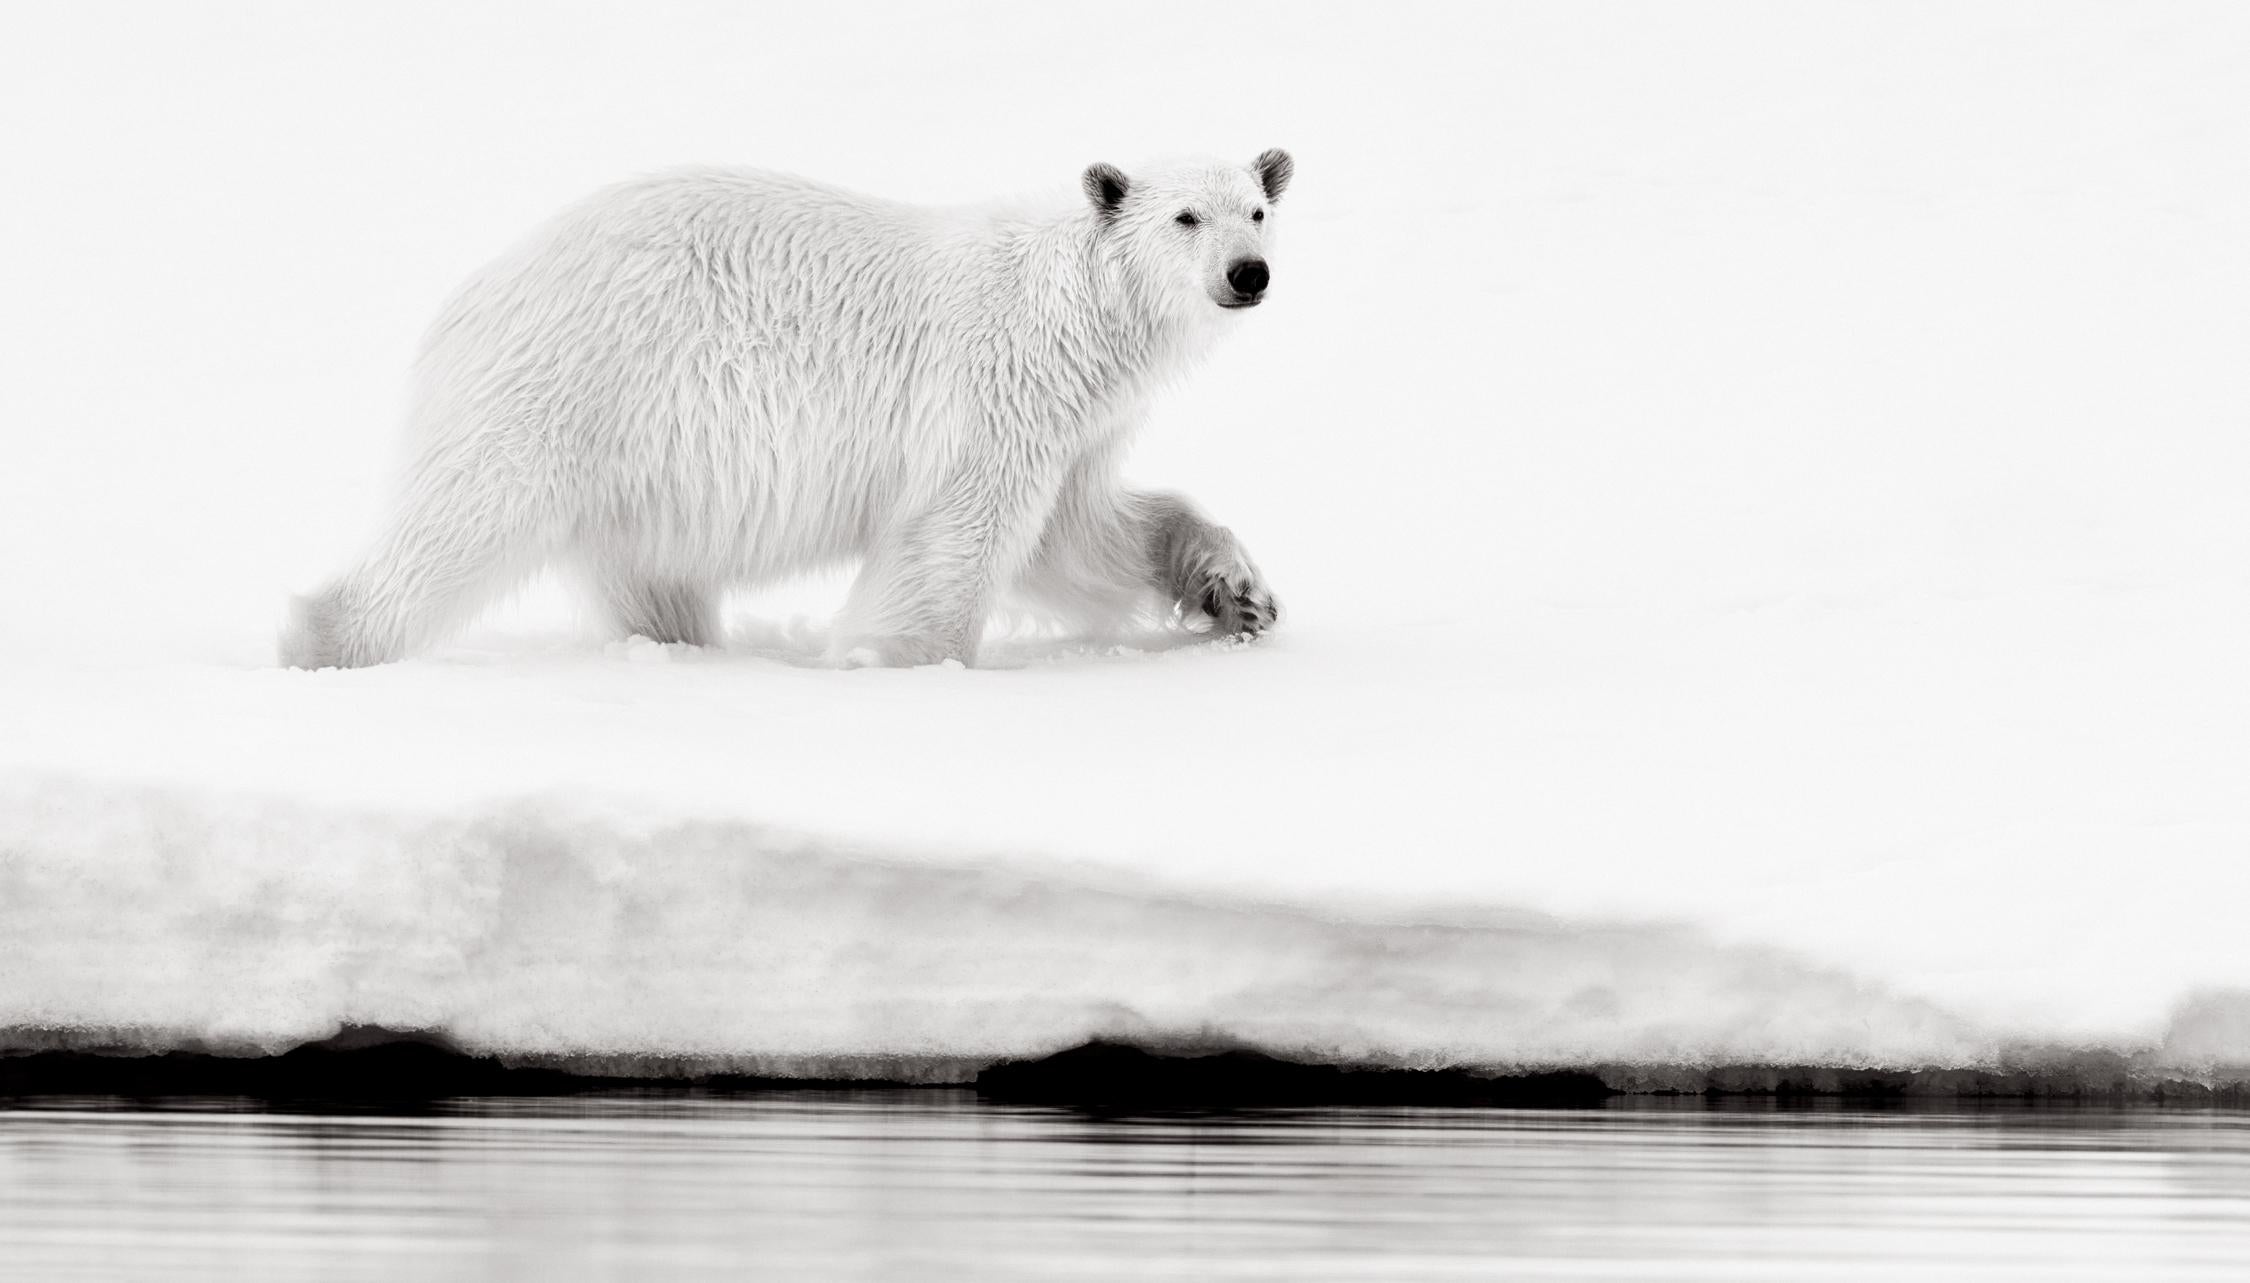 Black and White Photograph Drew Doggett - Ours polaire marchant près du bord de l'eau, photographie en noir et blanc